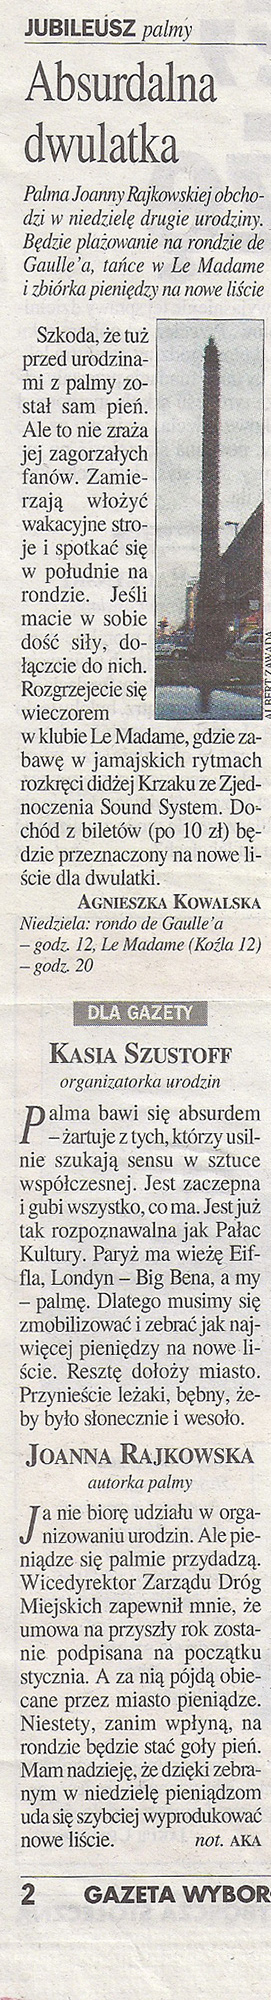 Agnieszka Kowalska, Absurdalna dwulatka, „Gazeta Wyborcza“, 12.2004. 